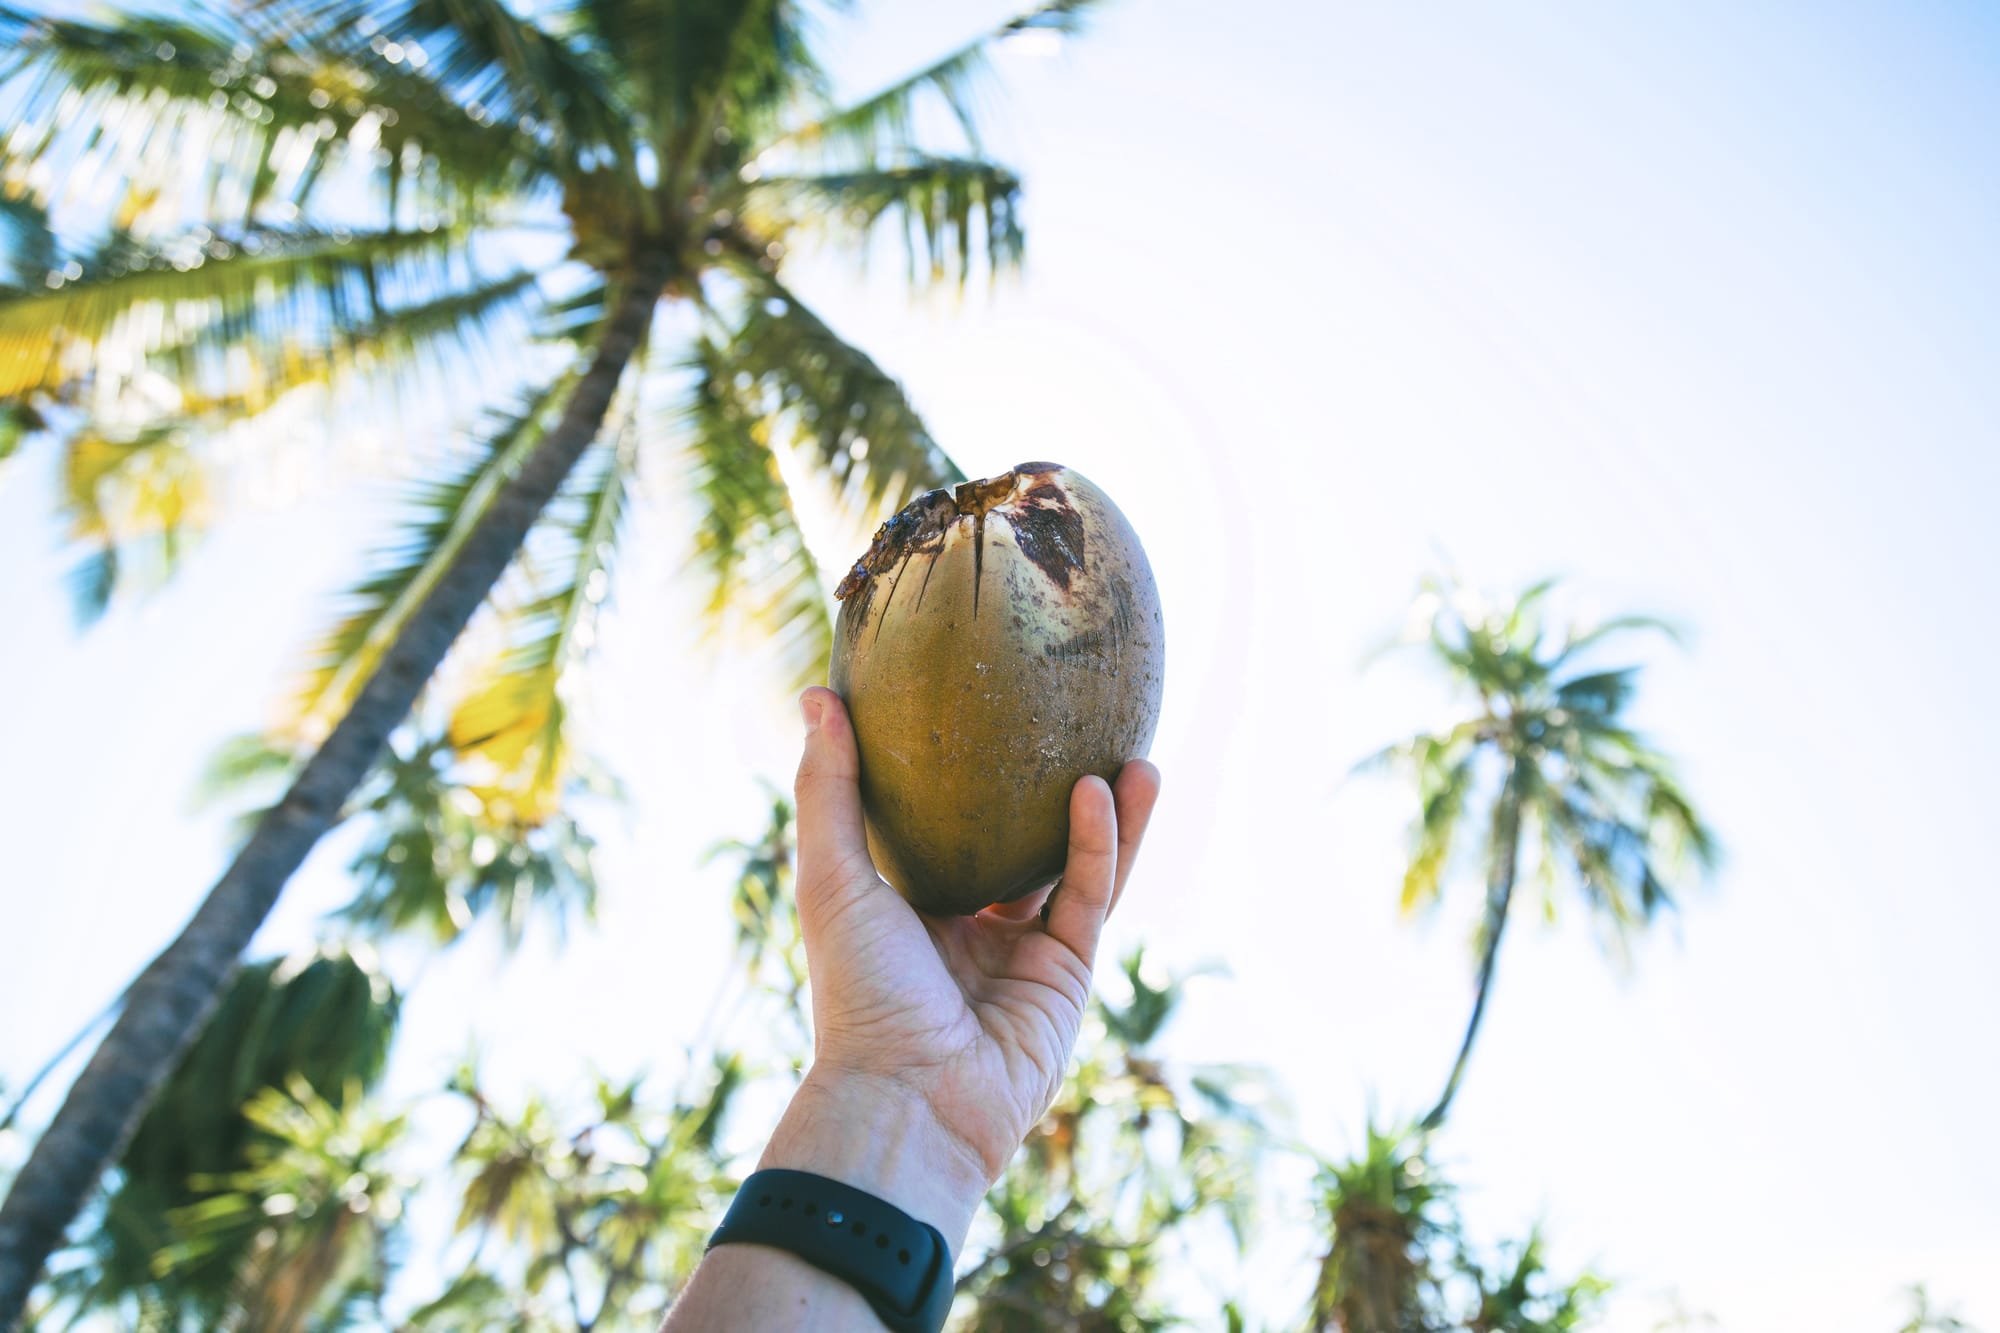 Kokos - najbolj zdravilni sadež na svetu